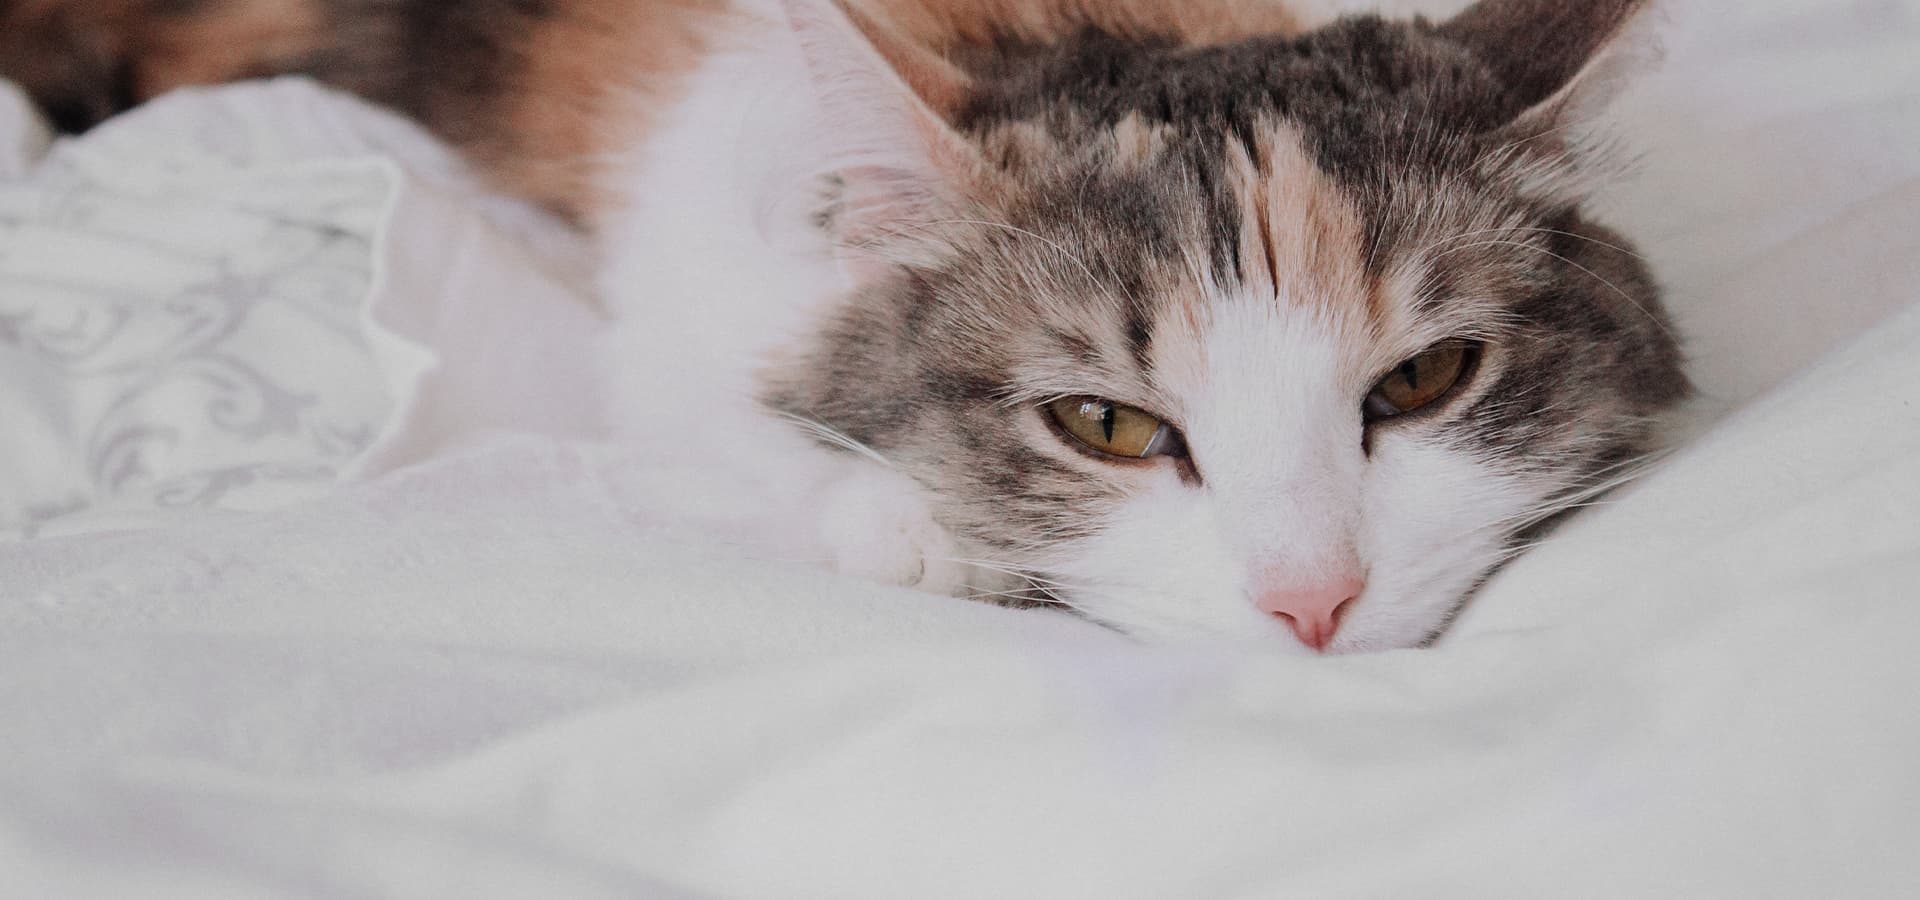 Tricolor Katze liegt auf einer weißen Decke